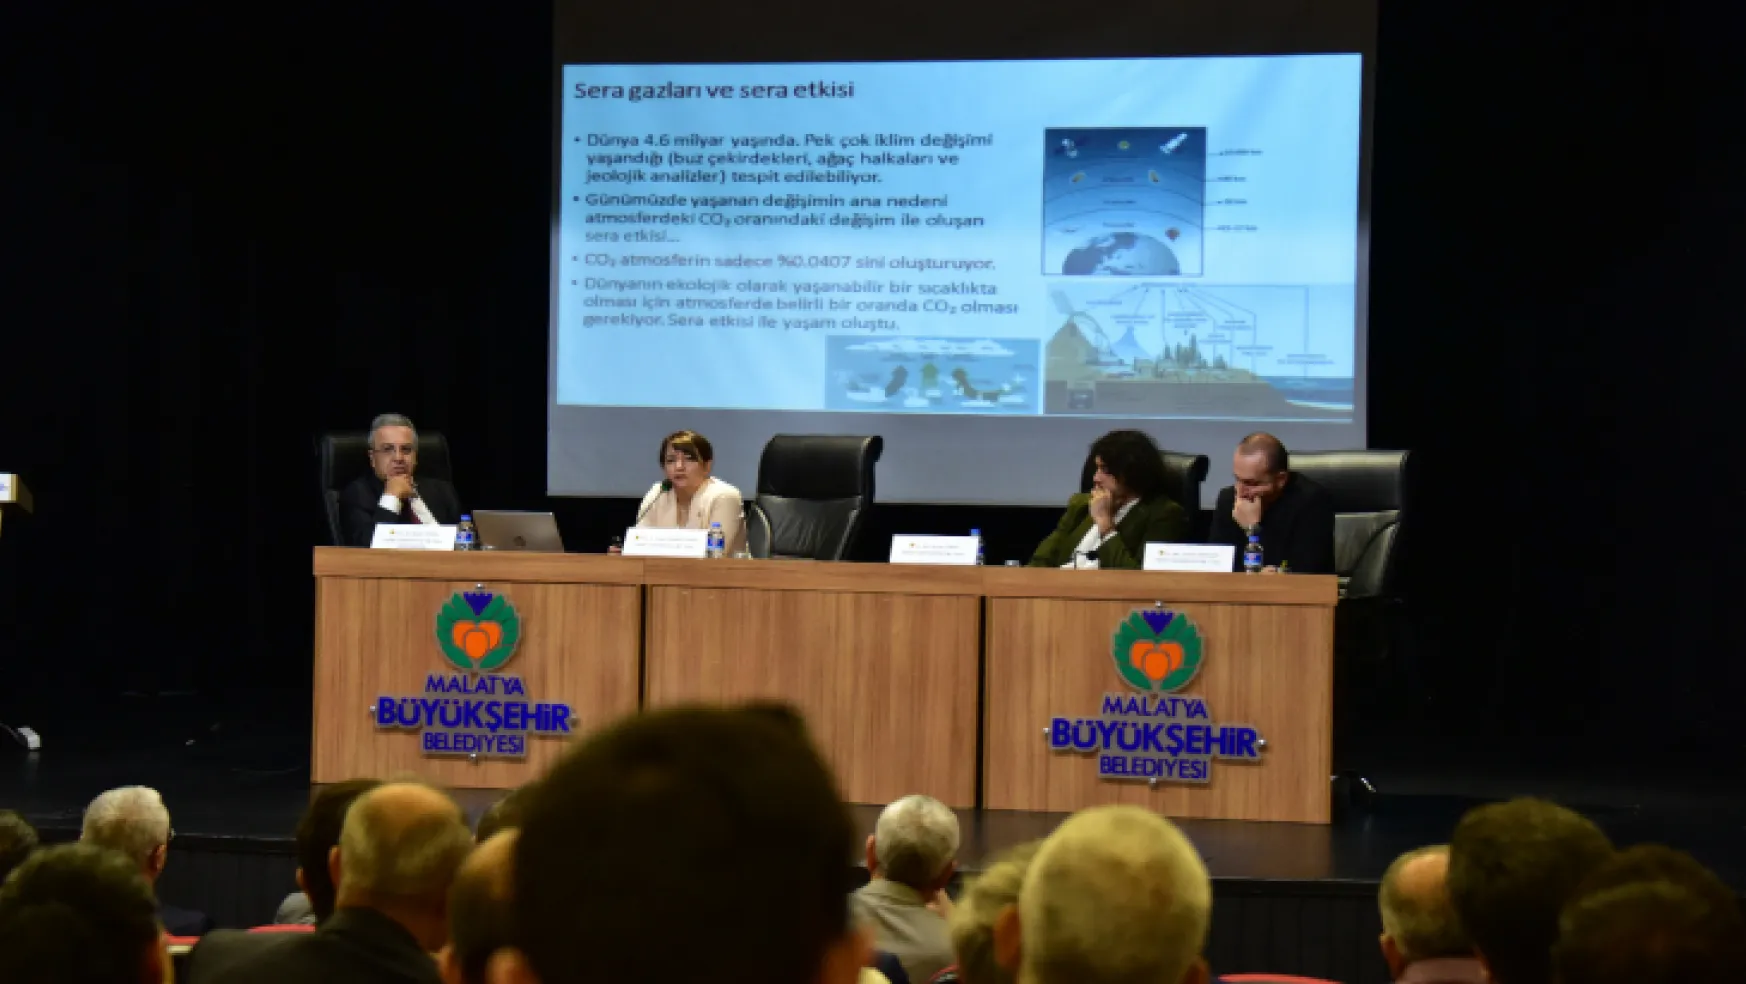 Malatya Büyükşehir Belediyesi tarafından 'İklim değişikliği ve Malatya üzerindeki etkileri' konulu seminer gerçekleştirildi